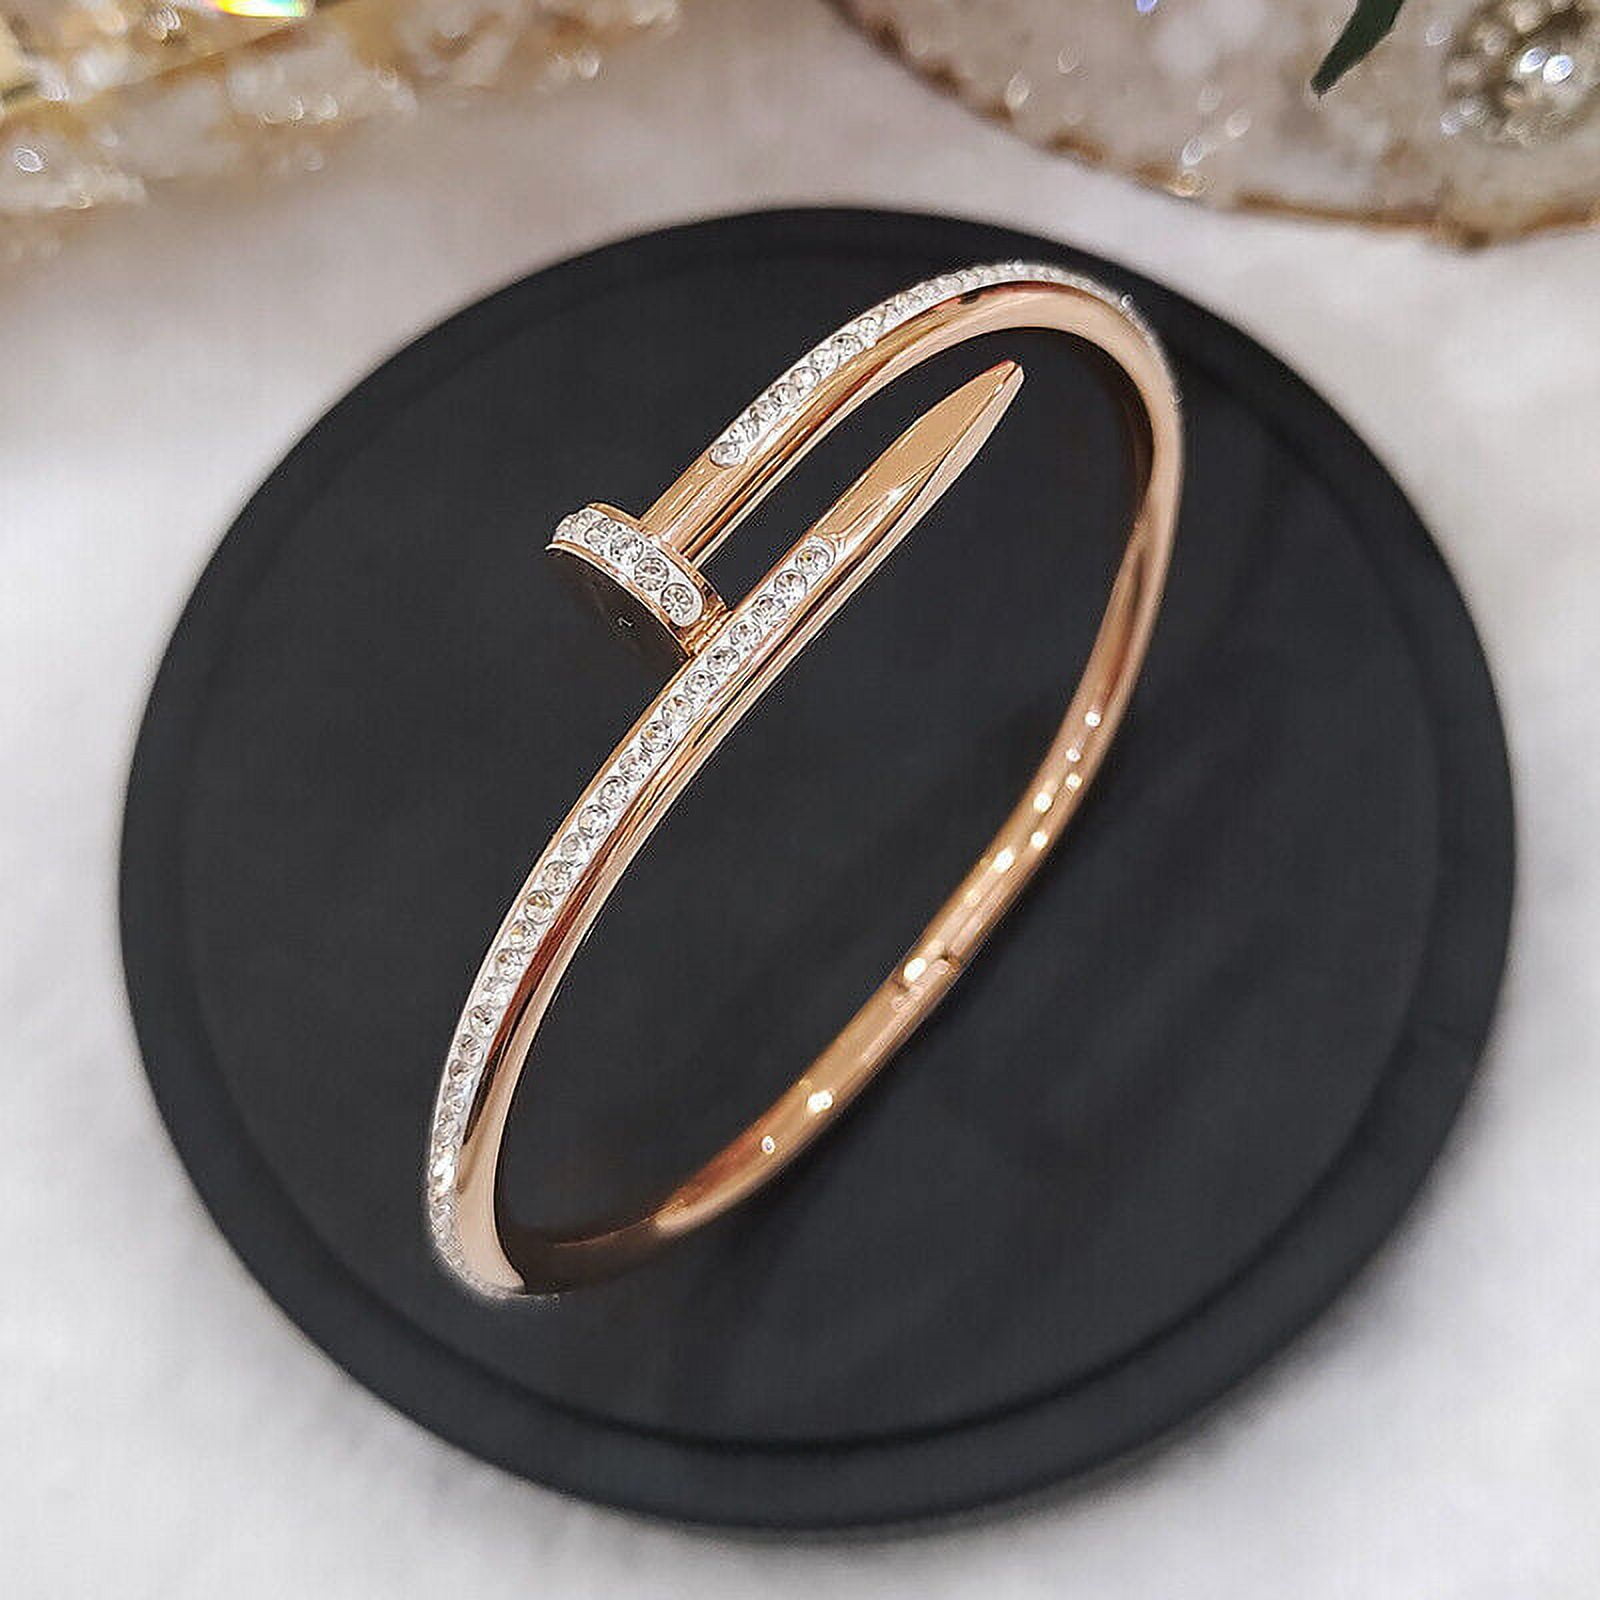 Buy The Bling Box Charming Diamond Nail Bracelet Bracelets For Women &  Girls. at Amazon.in